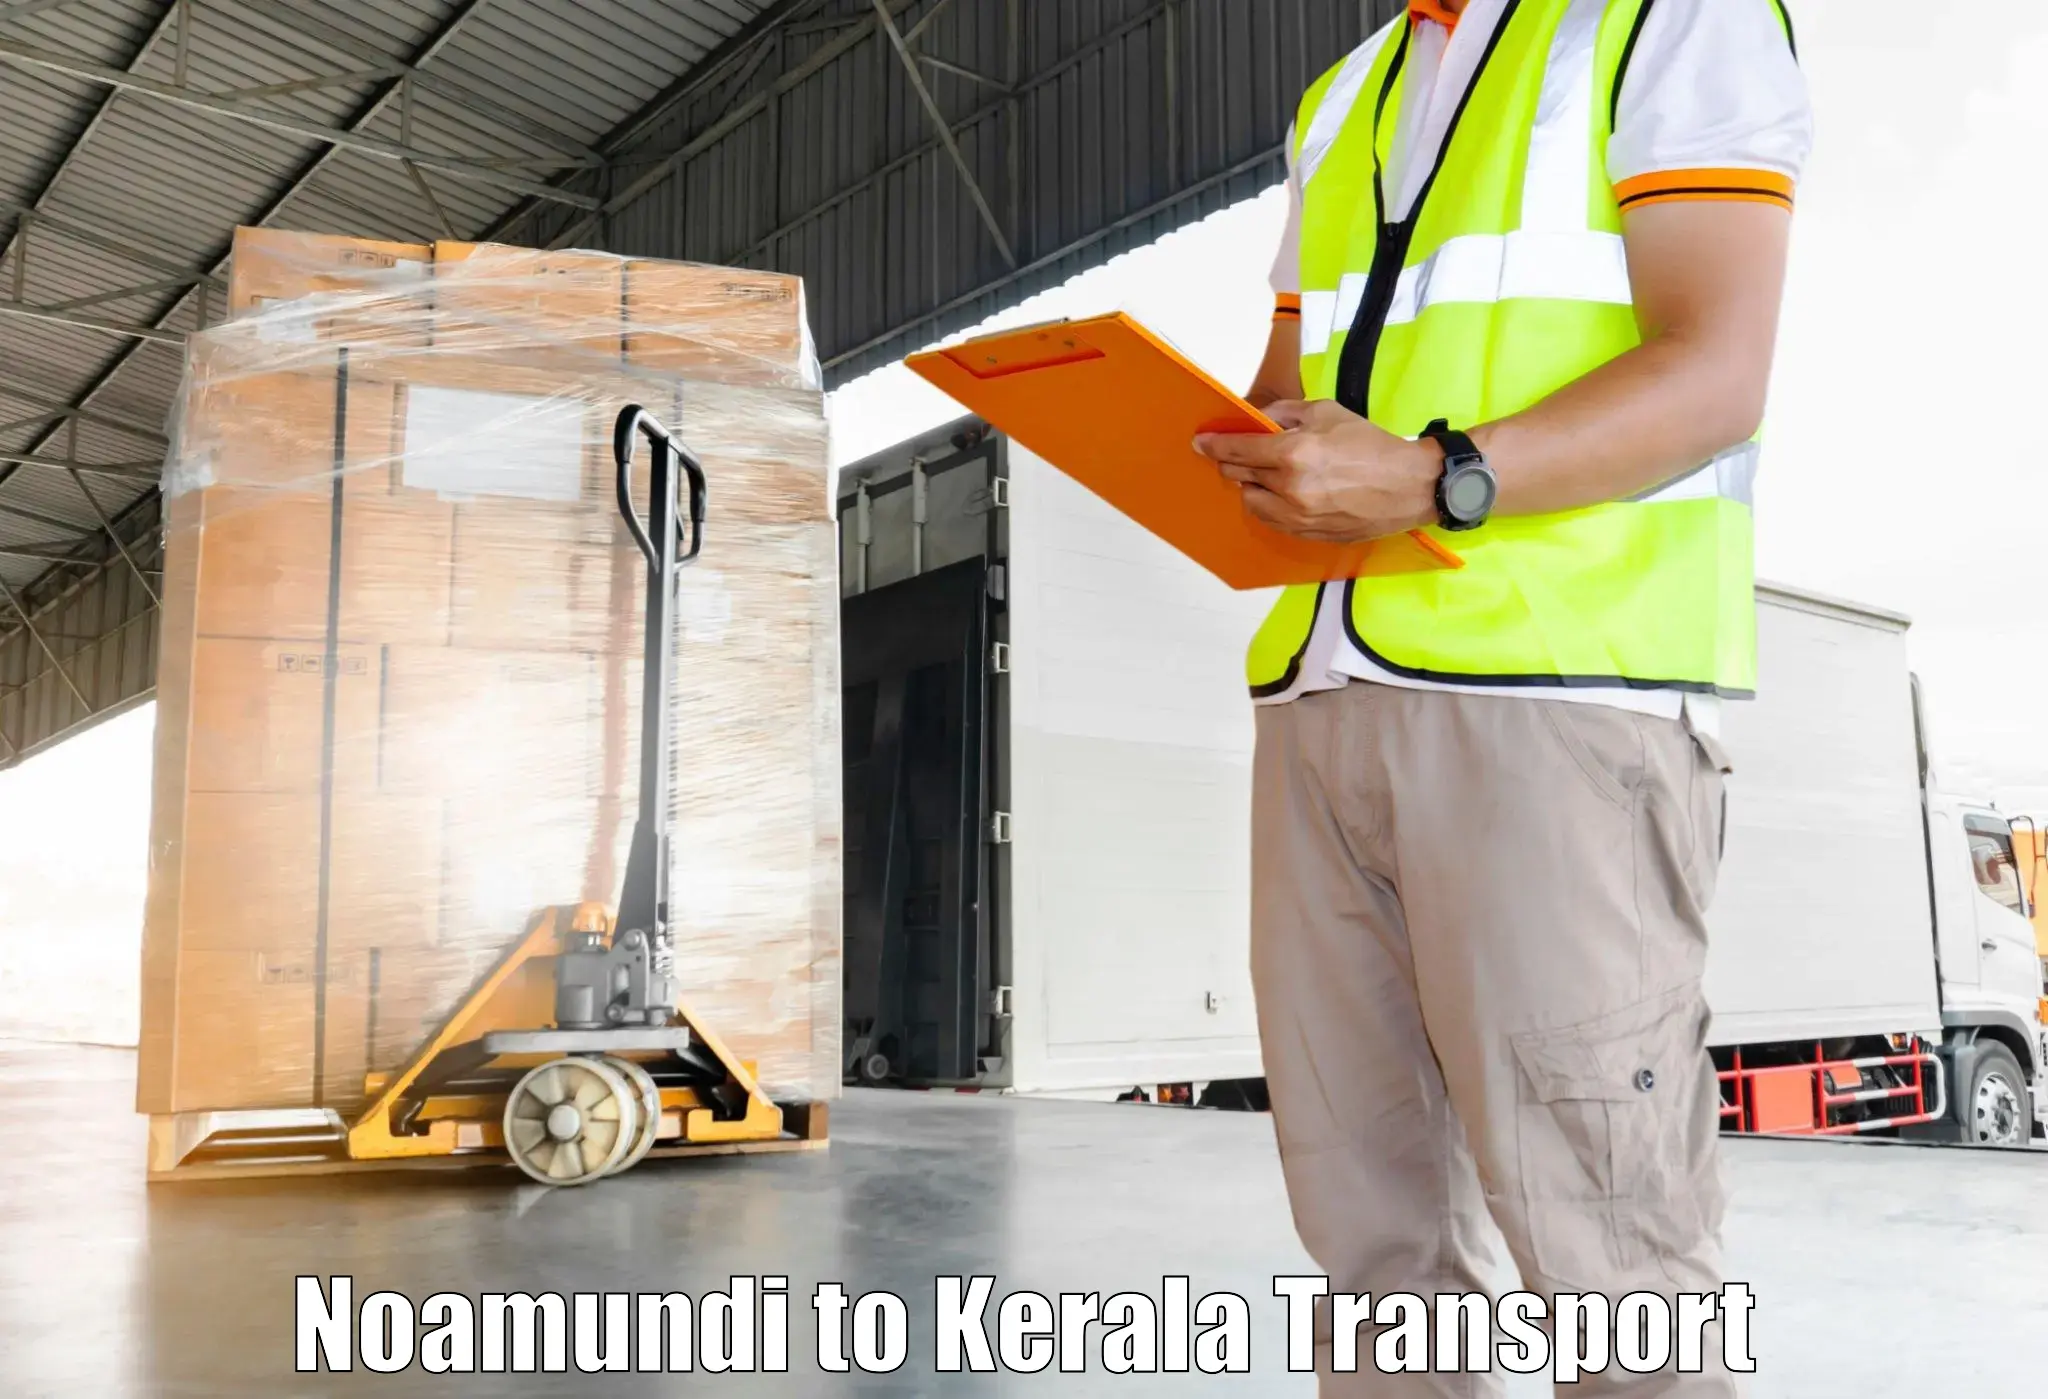 Pick up transport service Noamundi to Parippally